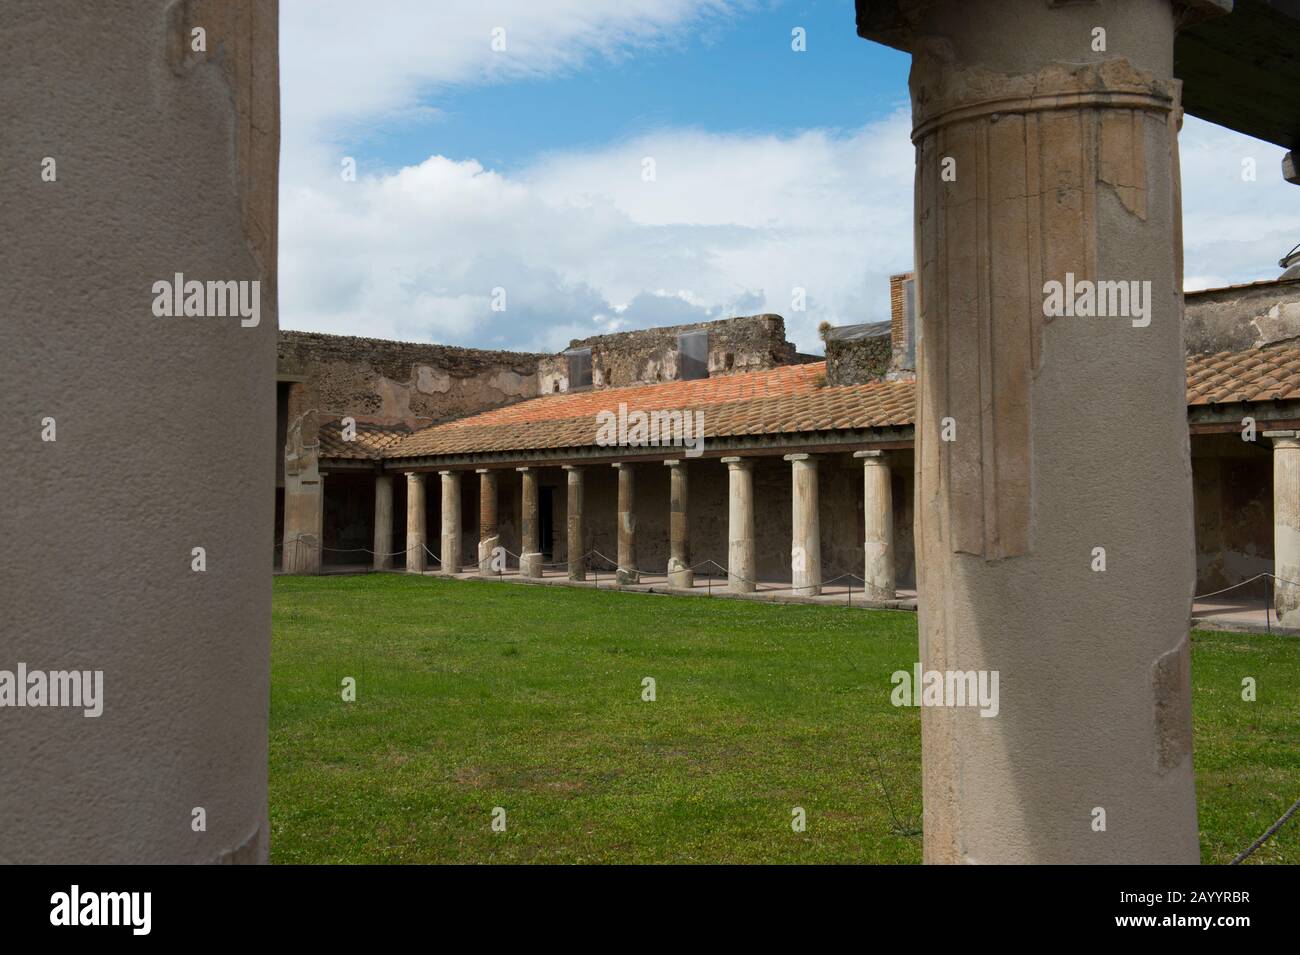 Le Terme Stabiane Palaestra di Pompei, in Italia, risalgono probabilmente al 5th secolo a.C. Foto Stock